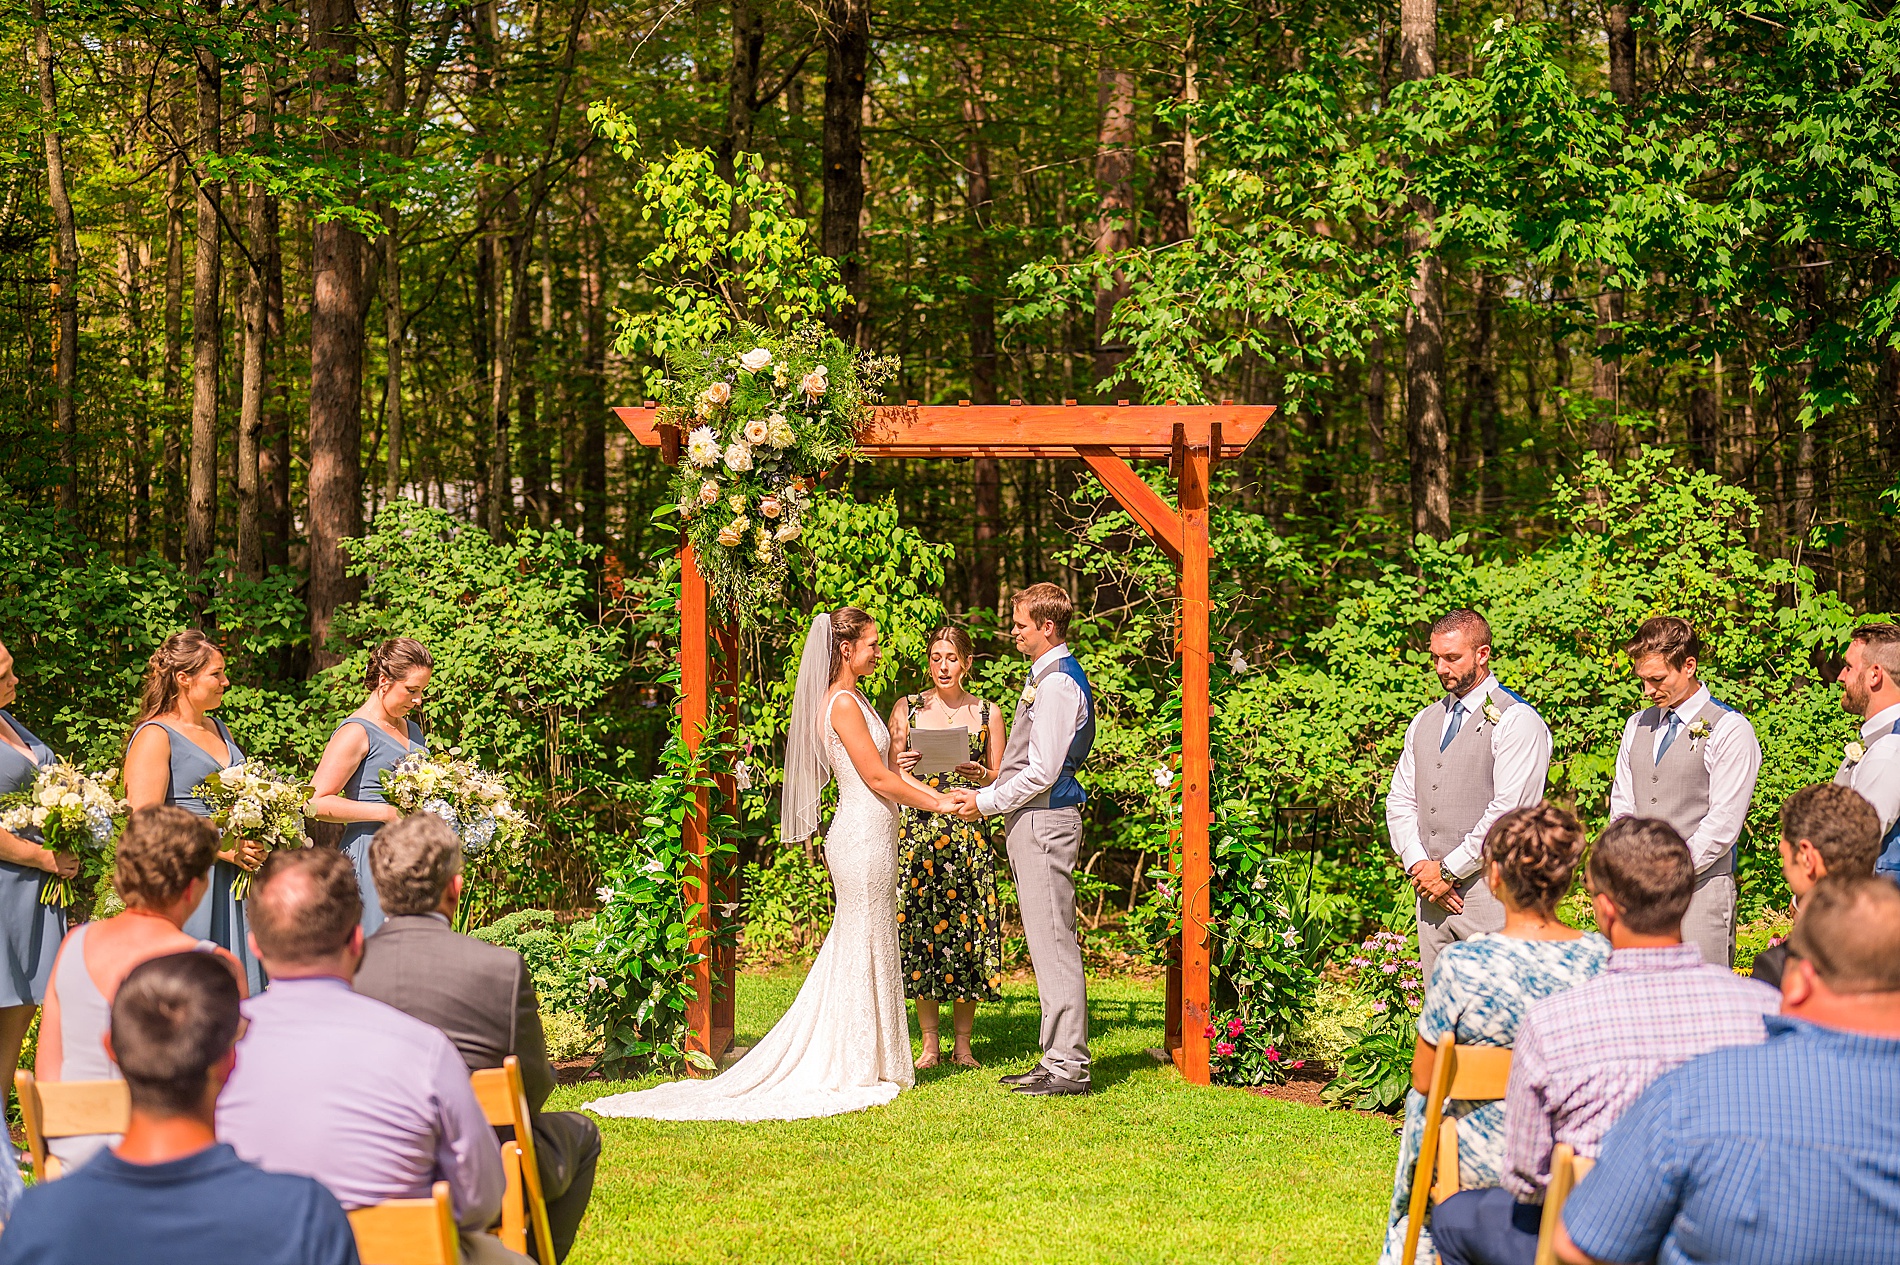 outdoor wedding ceremony in garden setting 